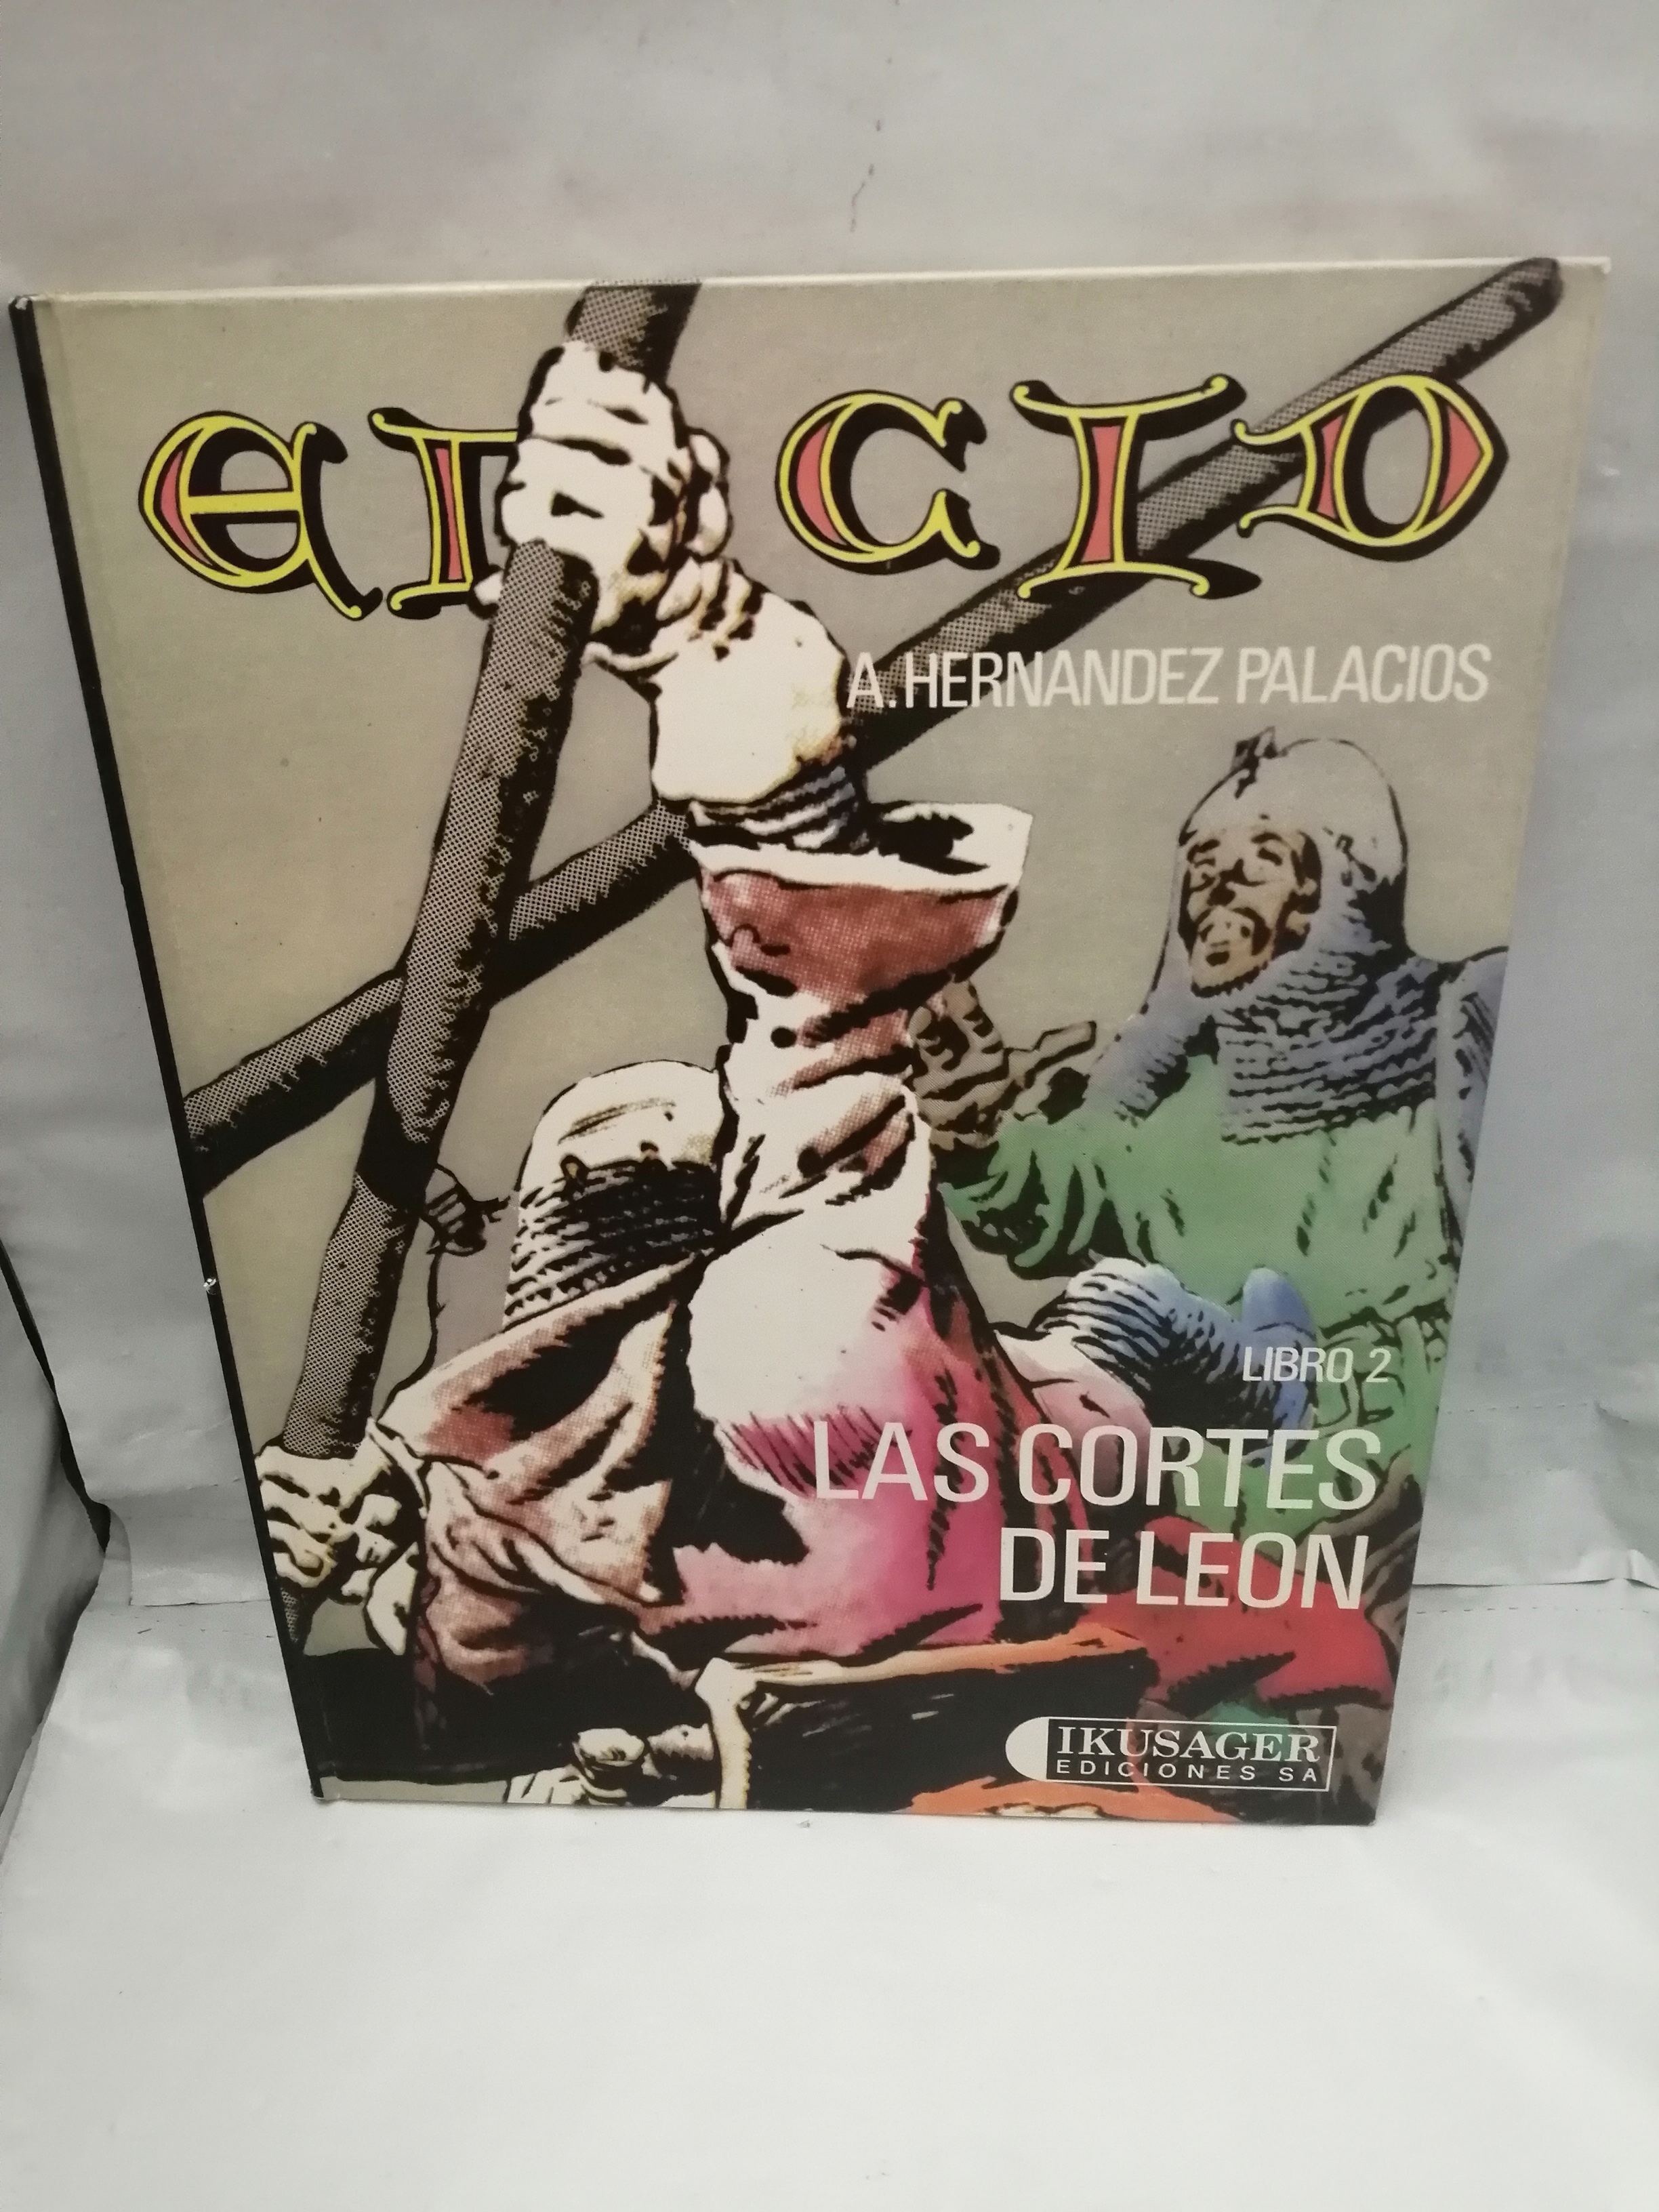 EL CID, Libro 2: Las cortes de León (Primera edición, tapa dura) - A. Hernández Palacios (Textos y dibujos)